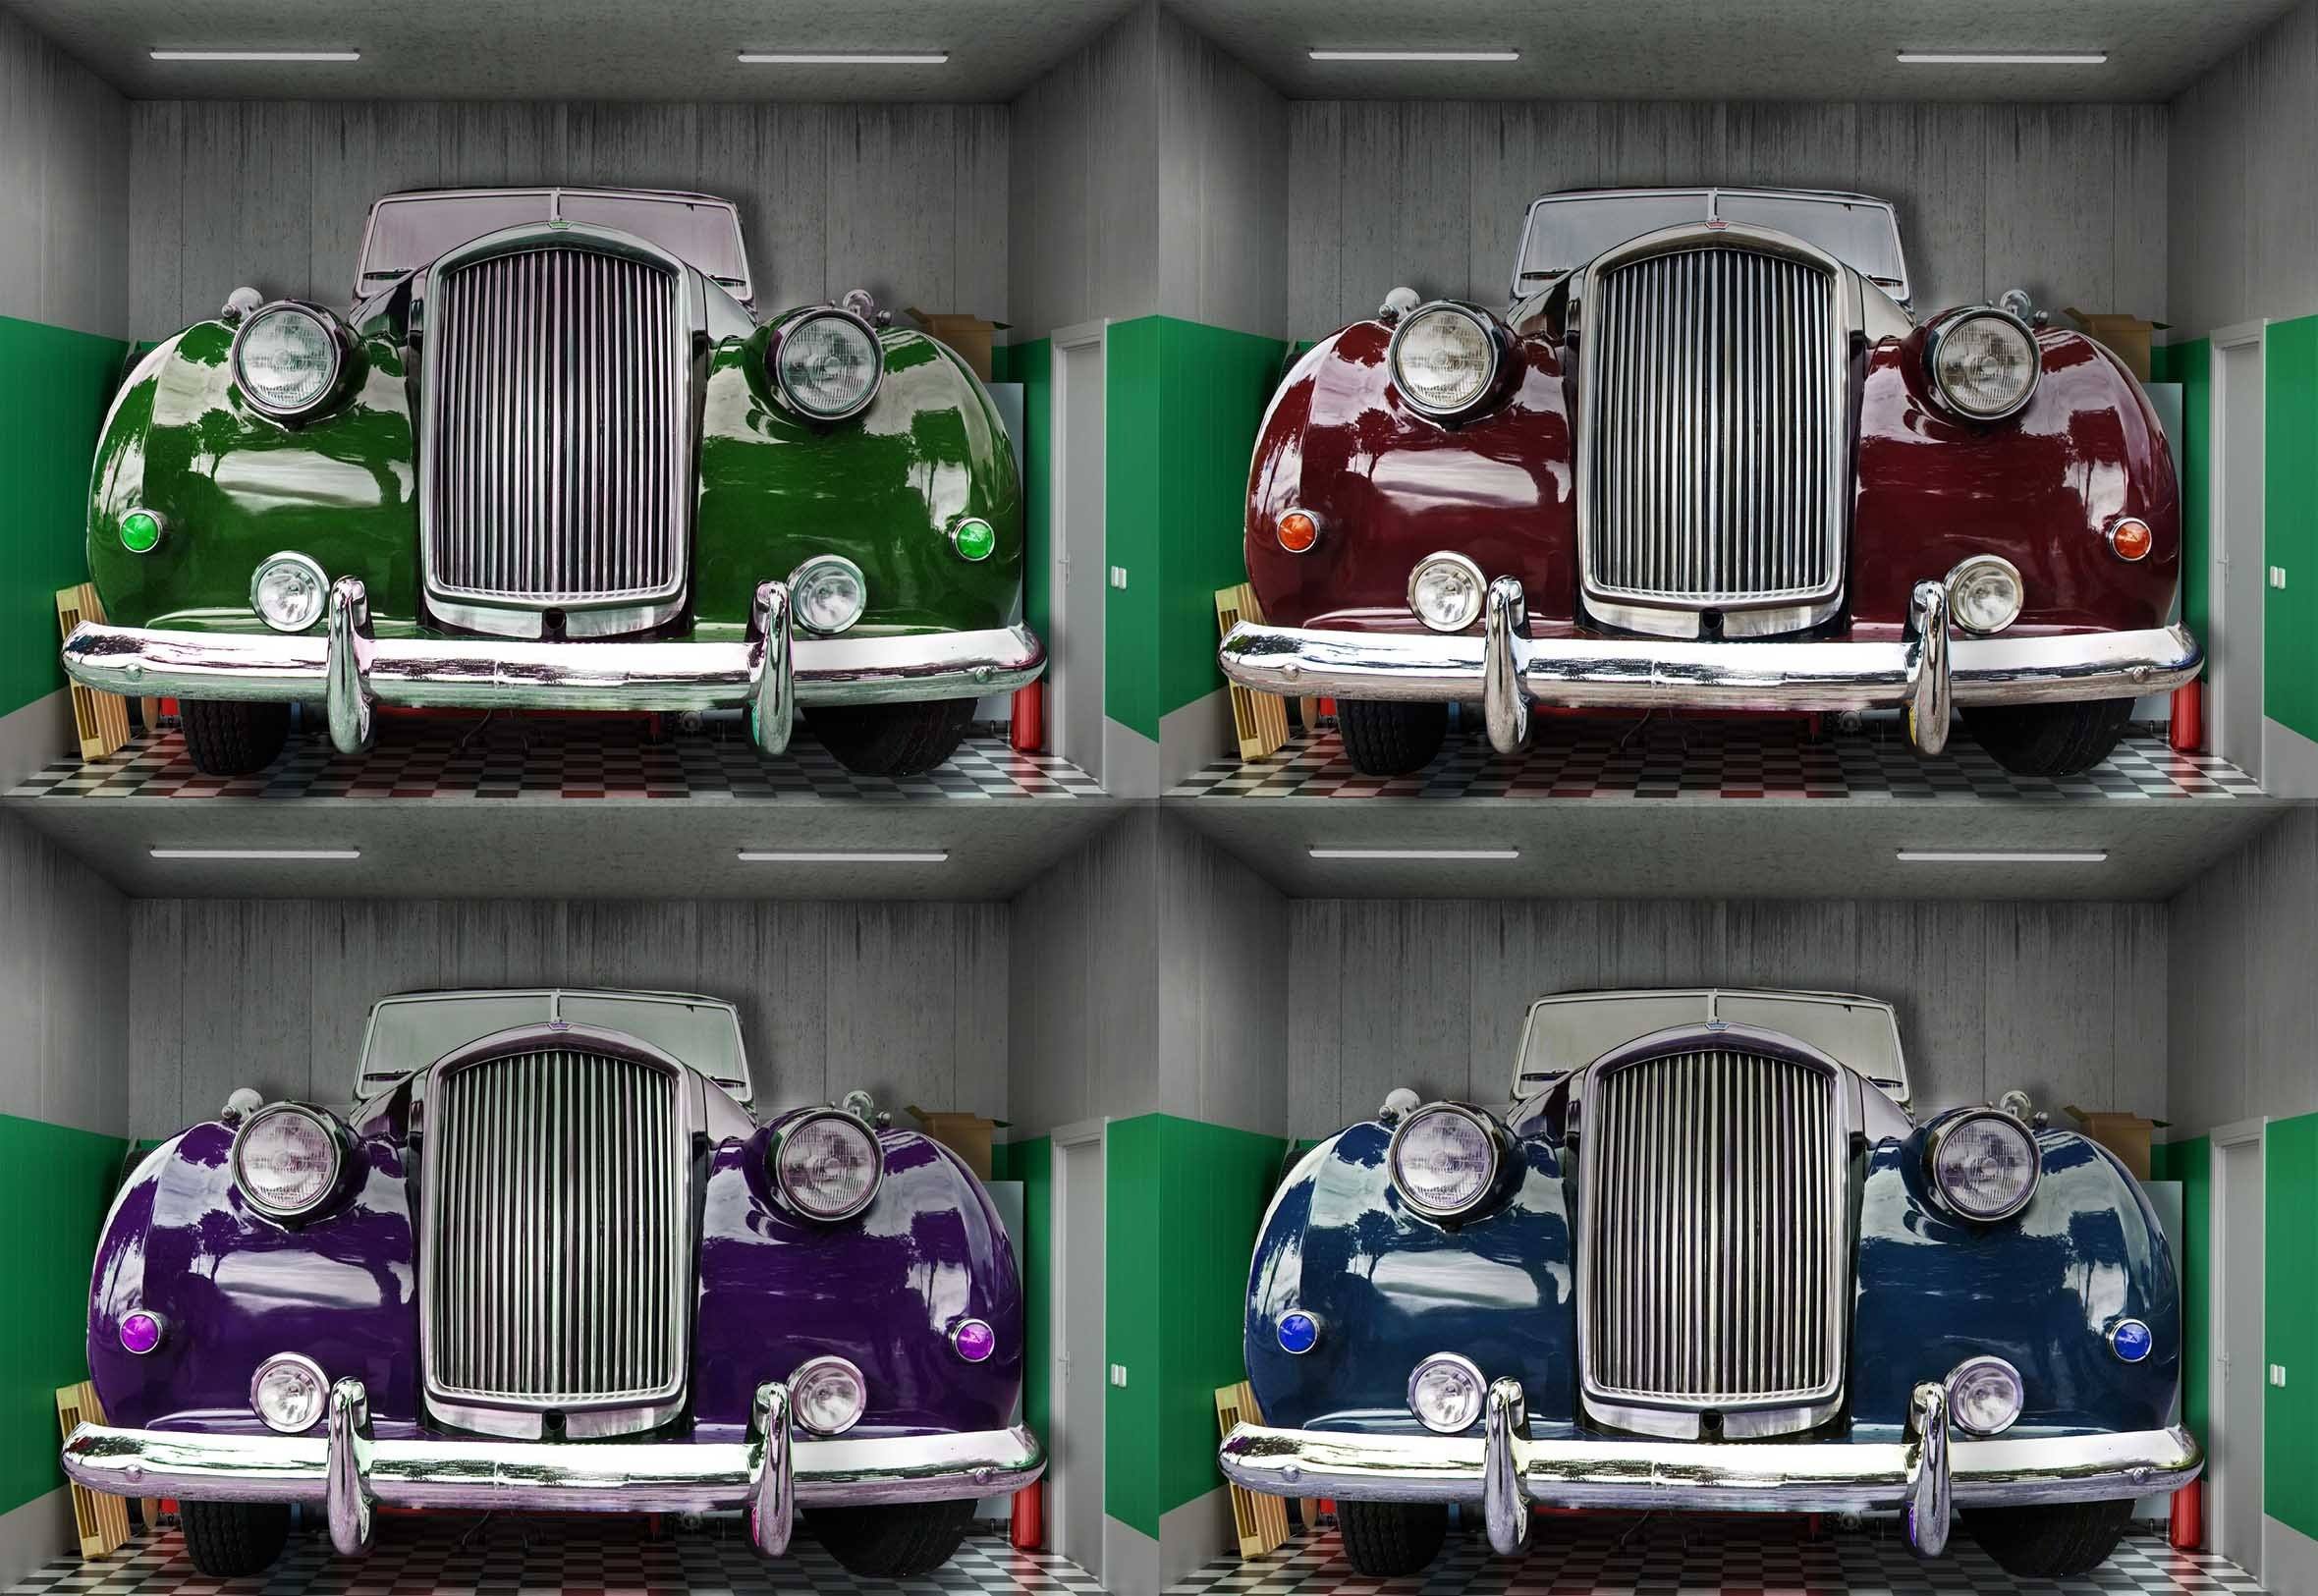 3D Retro Cars 417 Garage Door Mural Wallpaper AJ Wallpaper 